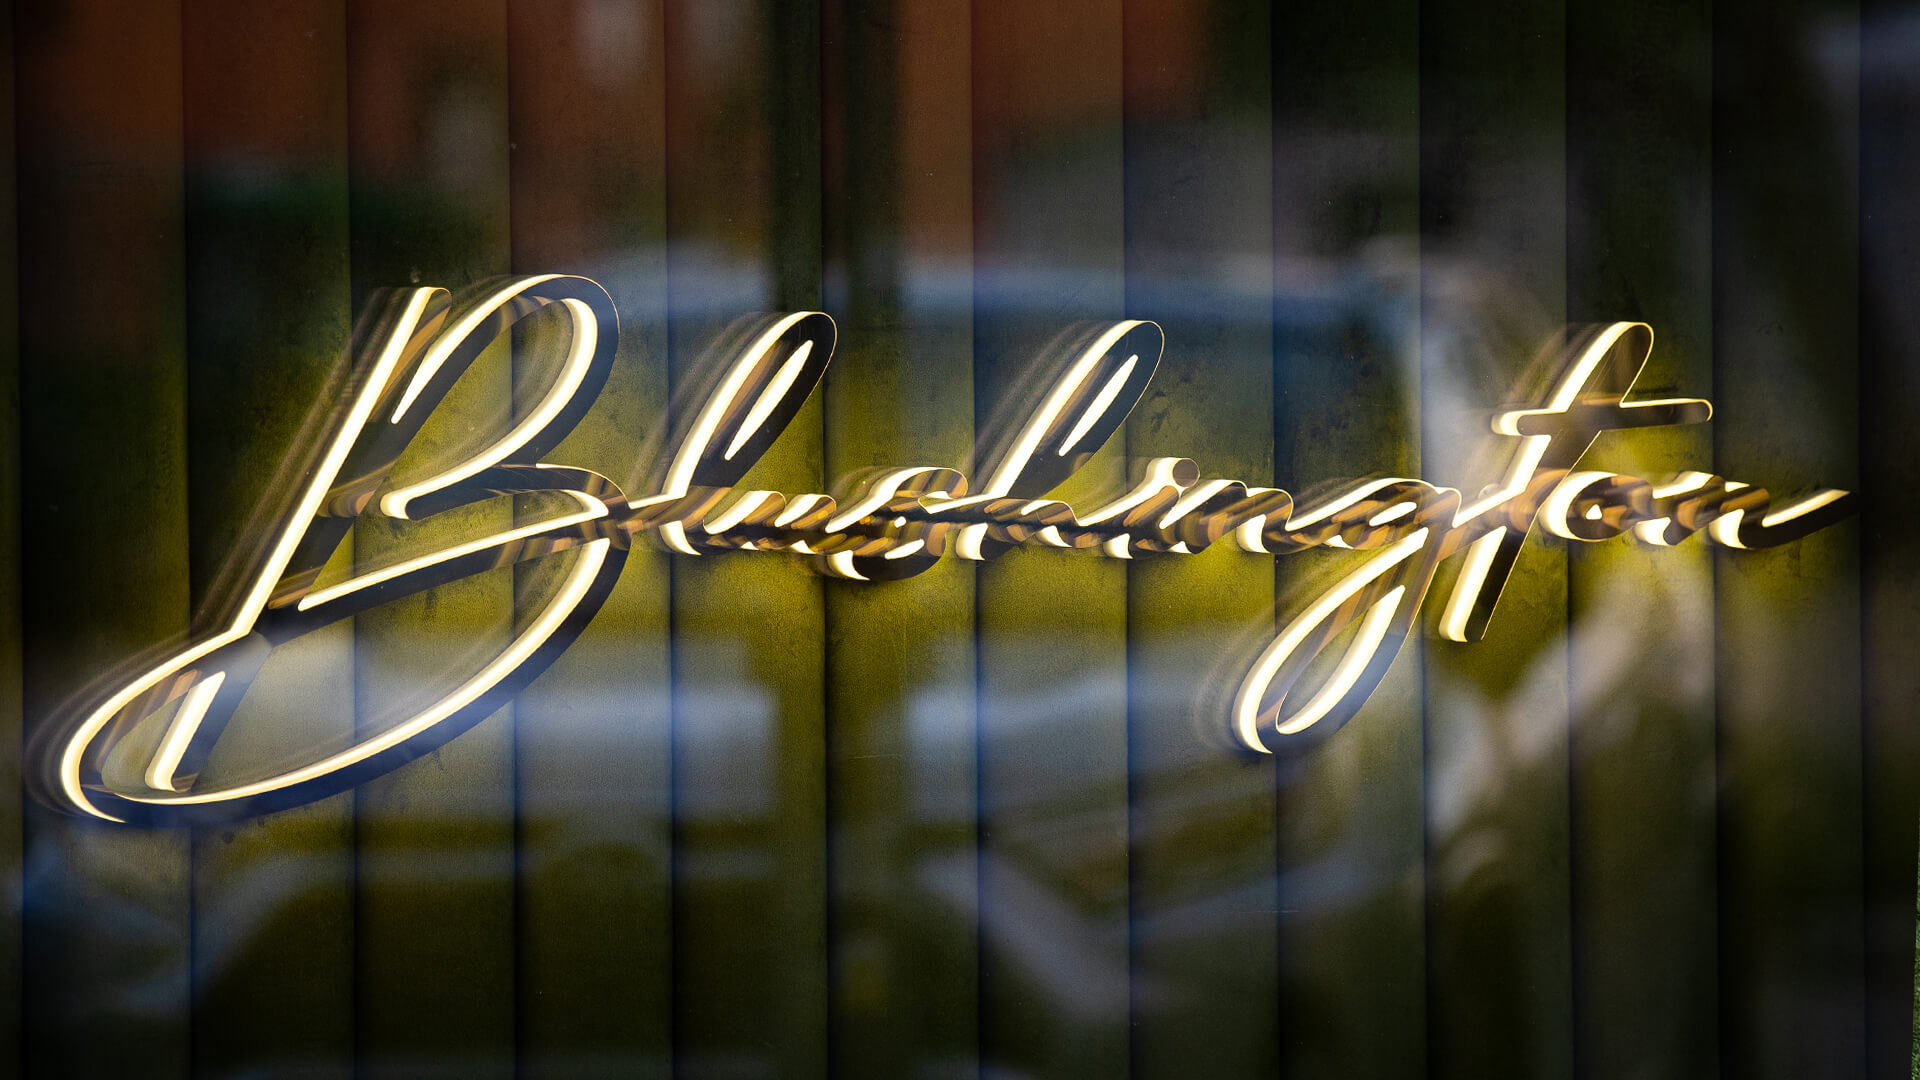 Blushington - Litery Blushington świecące bokiem LED, w kolorze złotym.